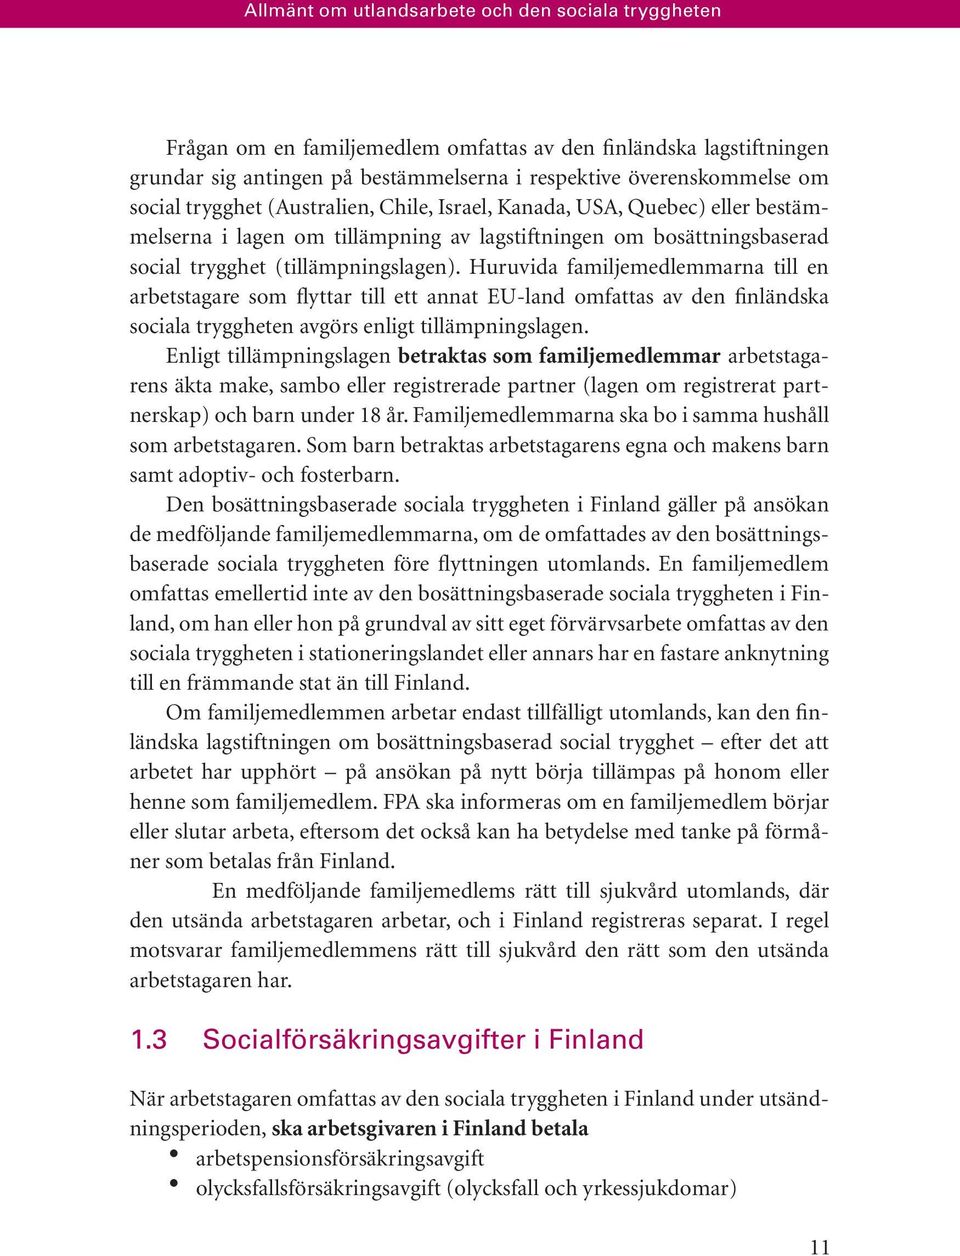 Huruvida familjemedlemmarna till en arbetstagare som flyttar till ett annat EU-land omfattas av den finländska sociala tryggheten avgörs enligt tillämpningslagen.